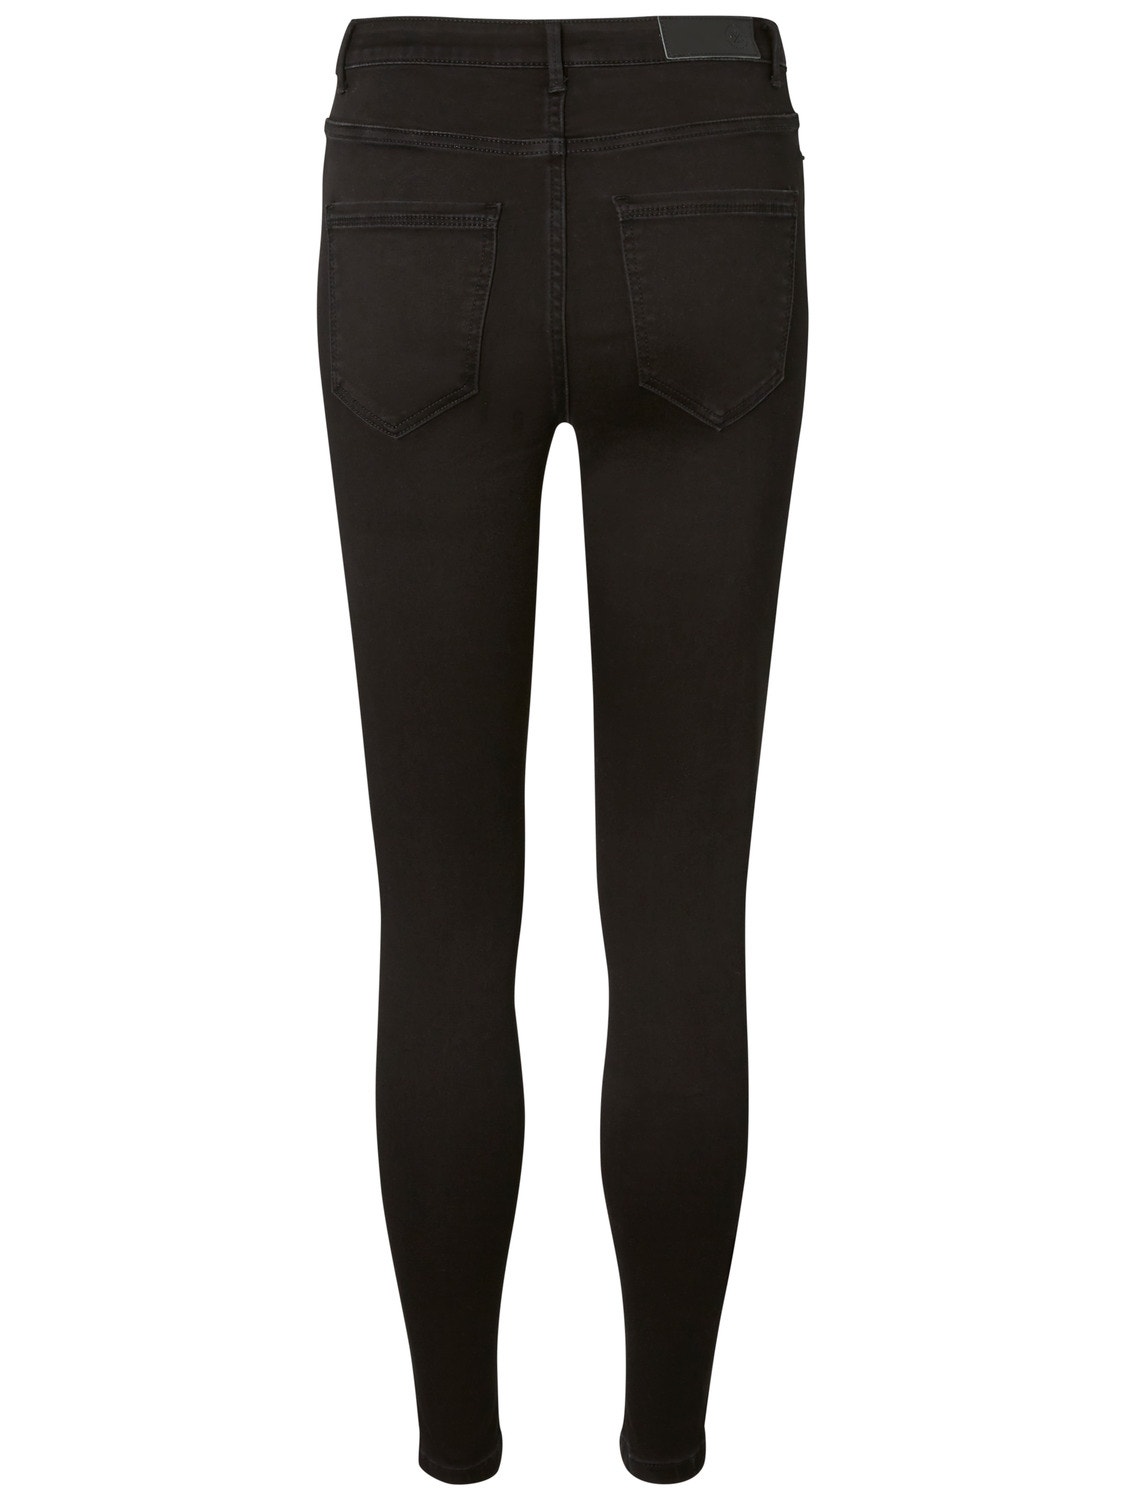 Vero Moda VMSOPHIA High rise Slim fit Jeans -Black - 10209215